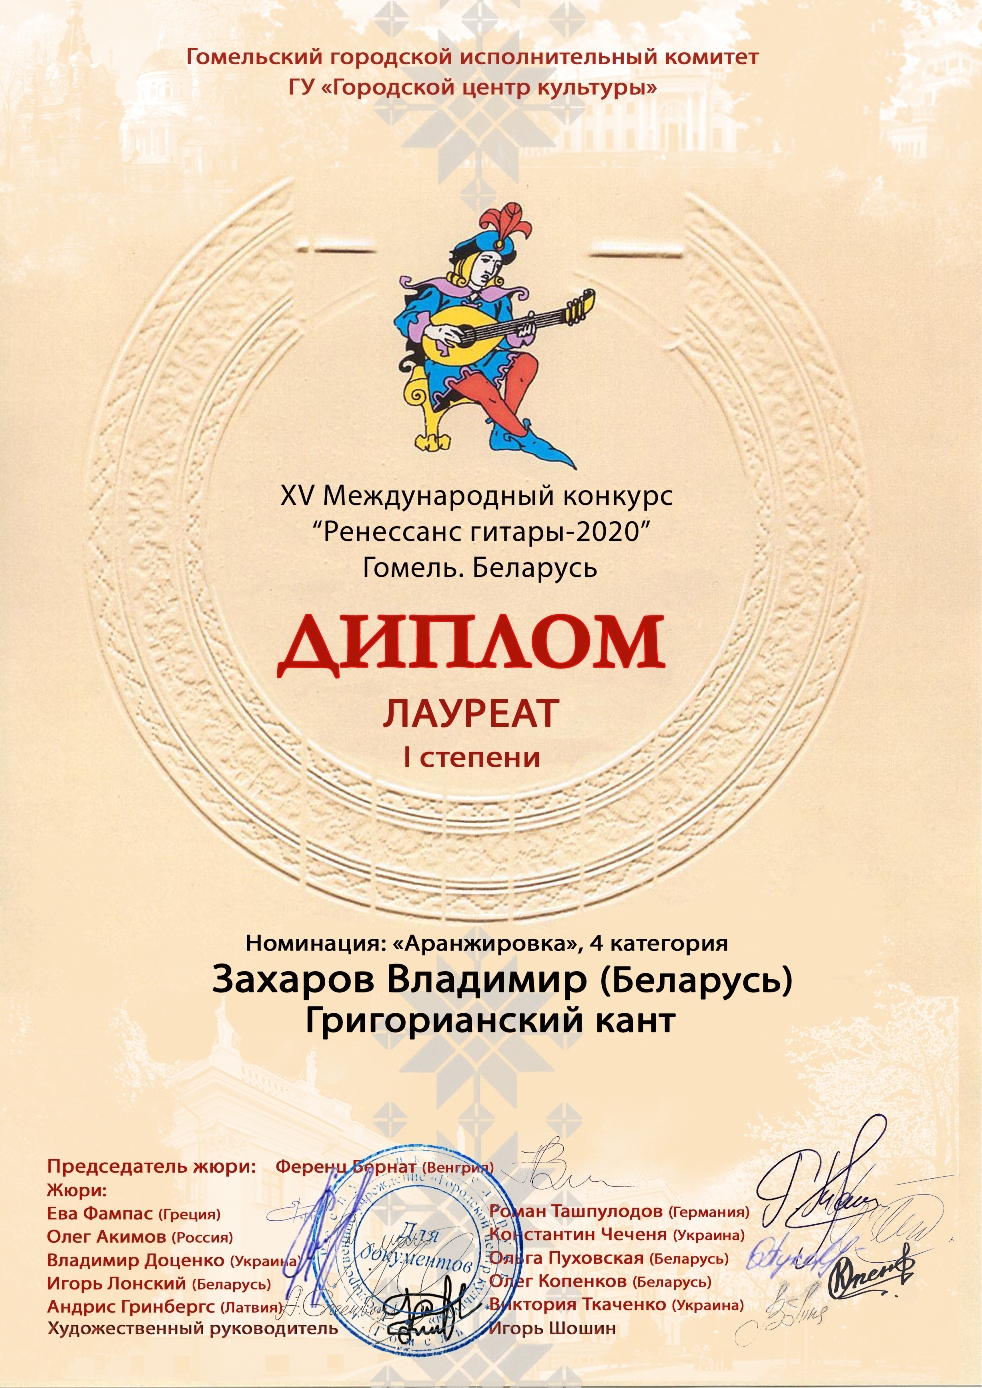 Захаров.Диплом Ренессанс гитары 2020a